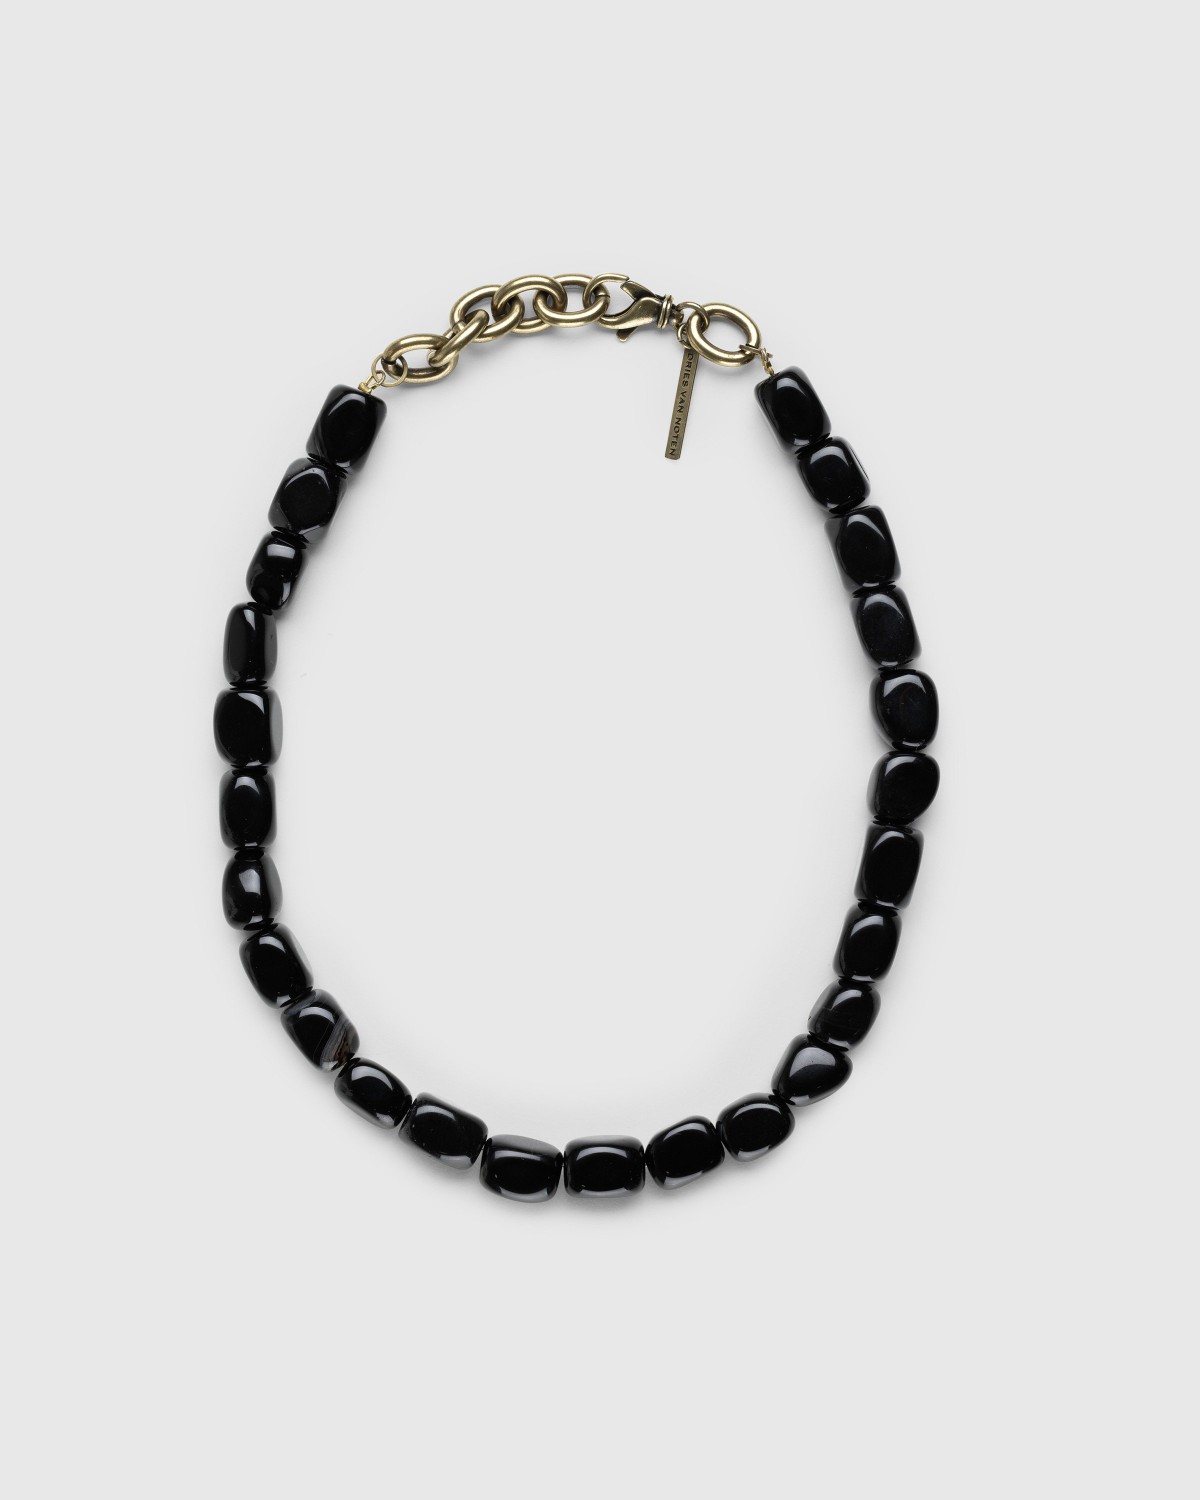 Dries van Noten – M232-206 Necklace Black | Highsnobiety Shop